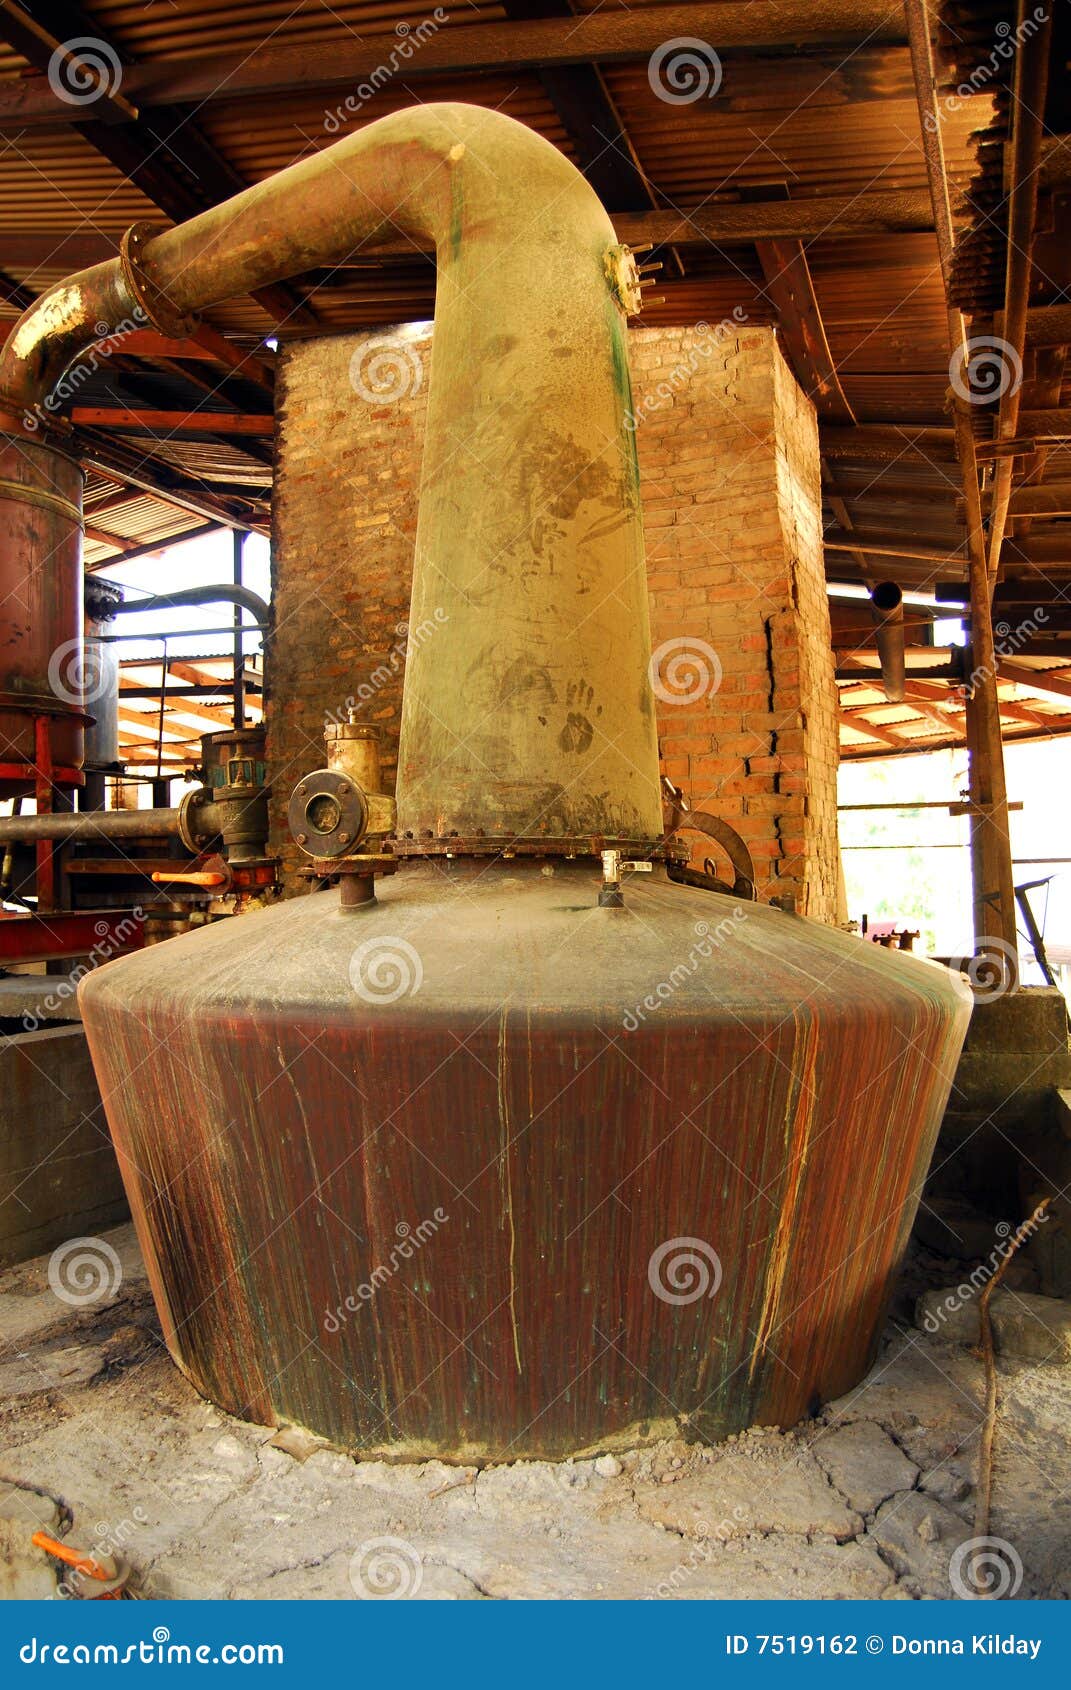 copper vat in rum factory